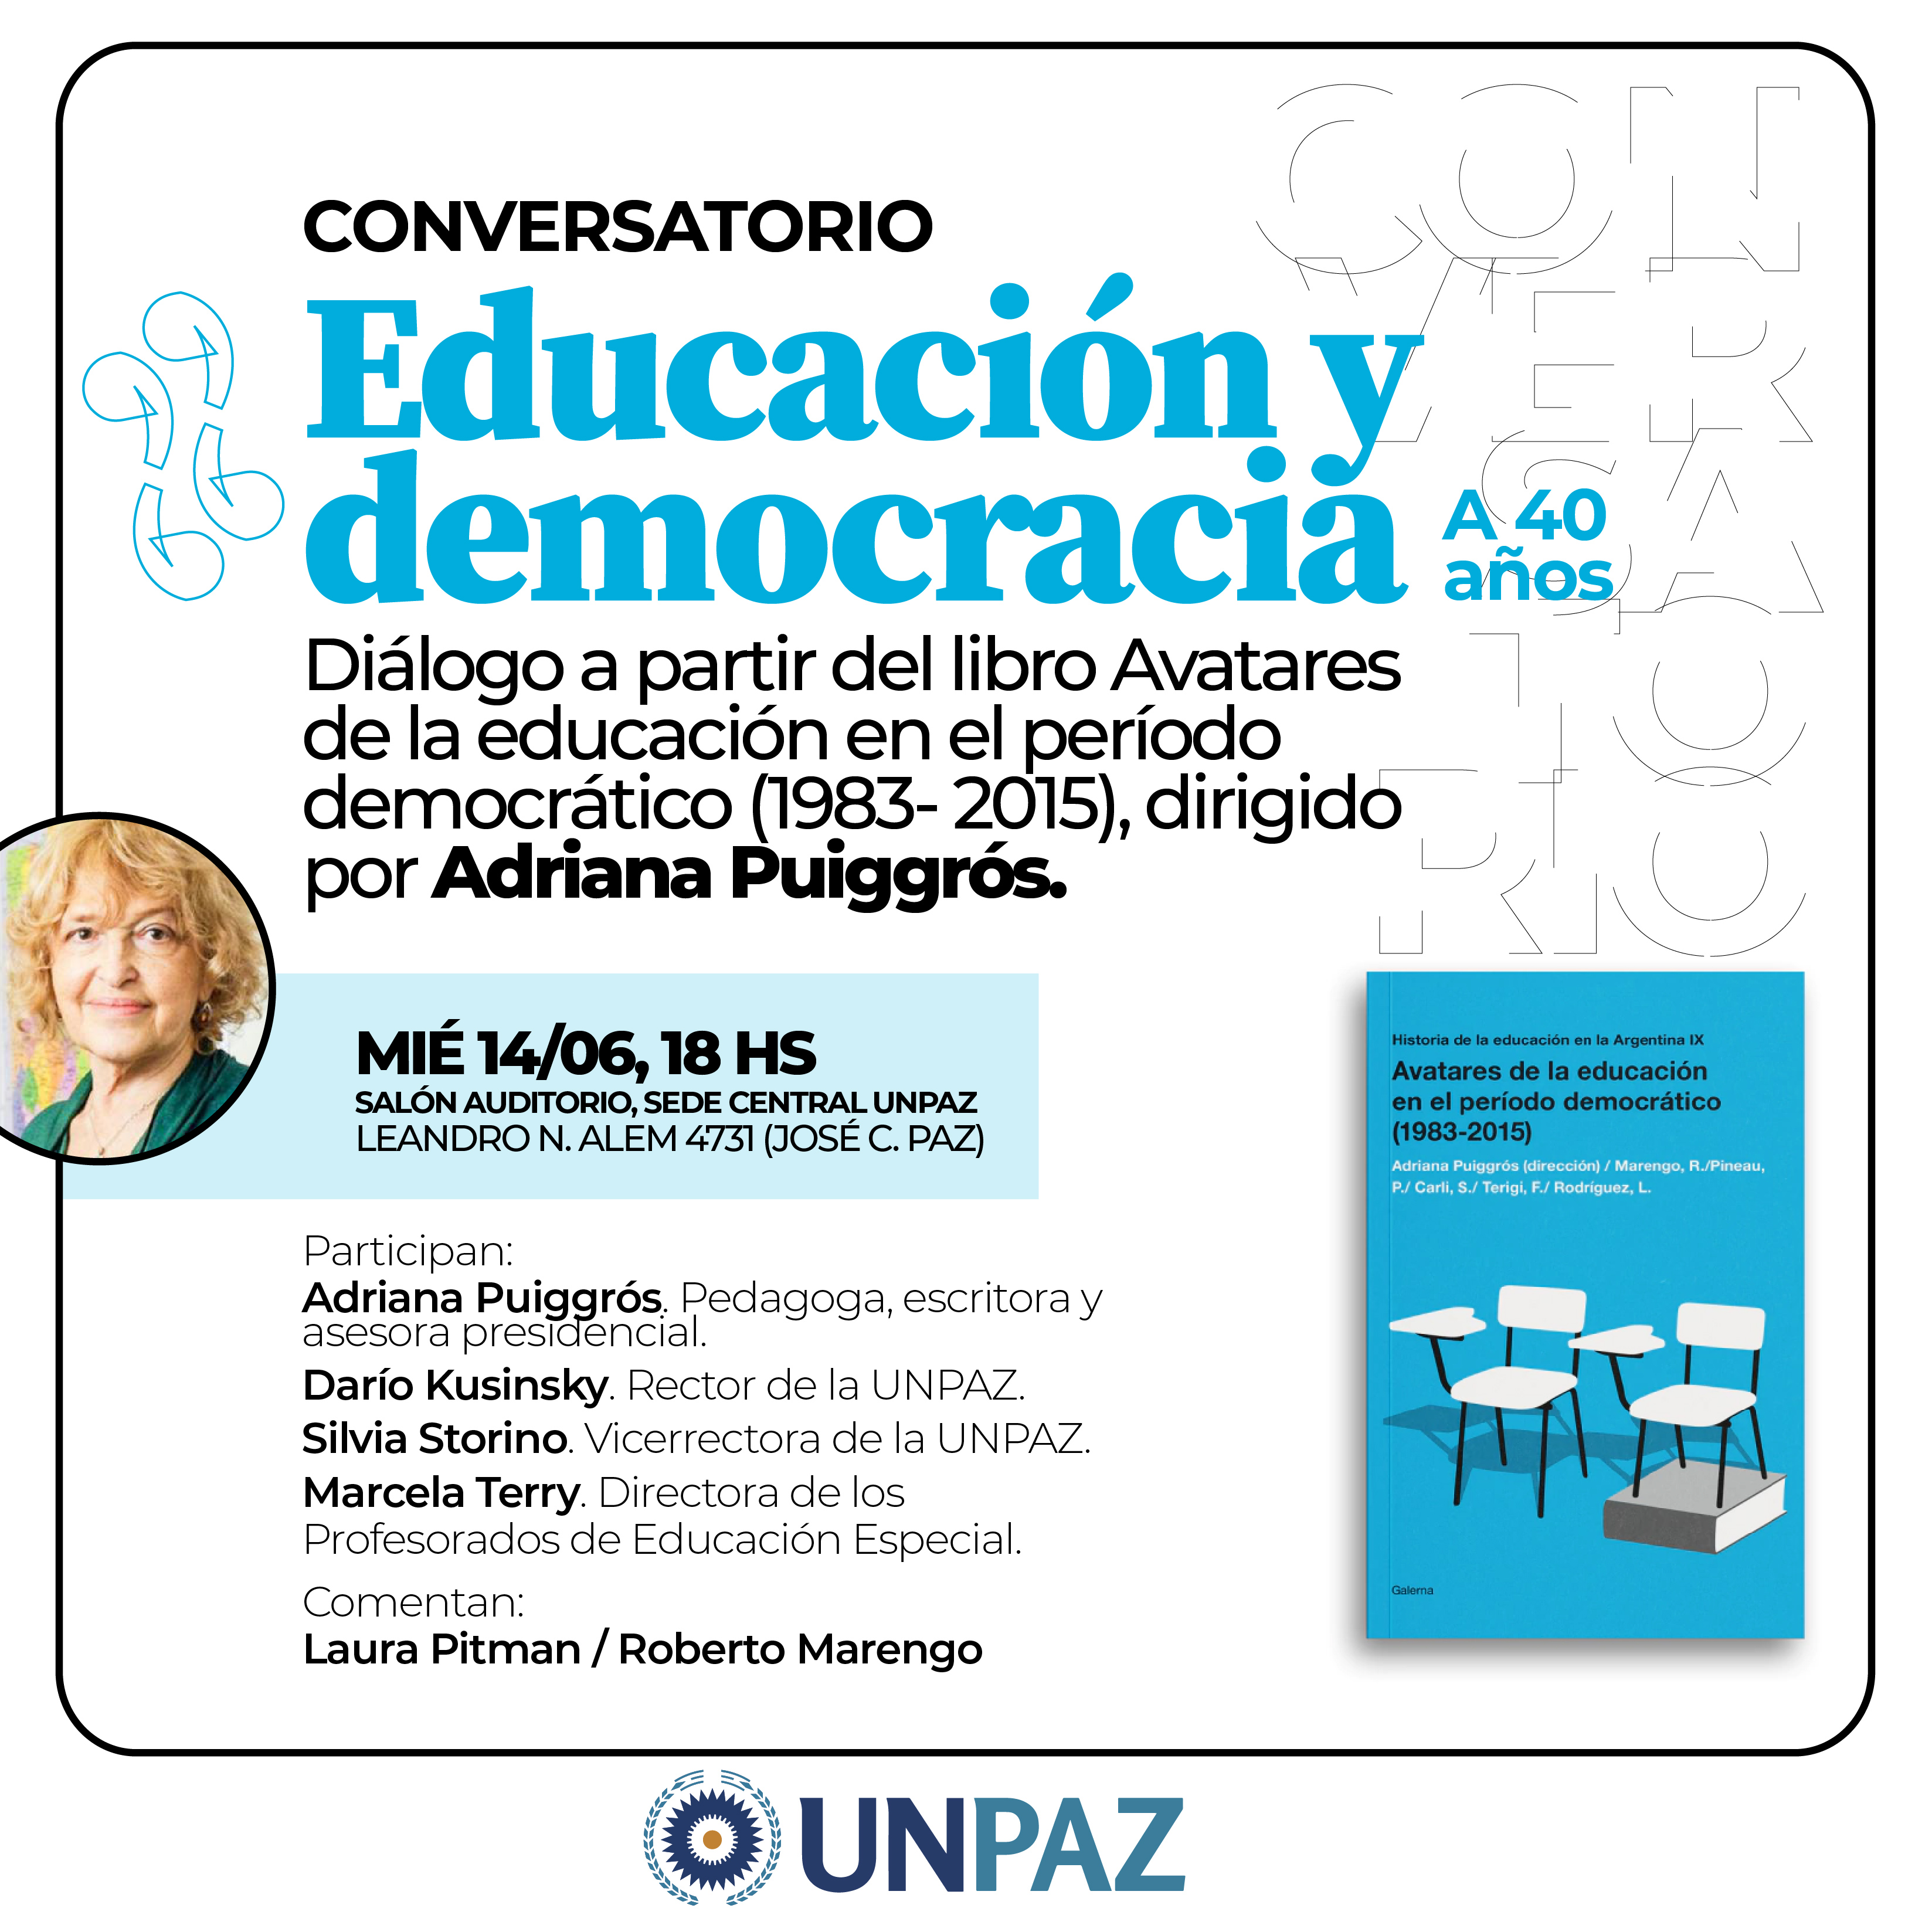 Conversatorio "Educación y democracia"